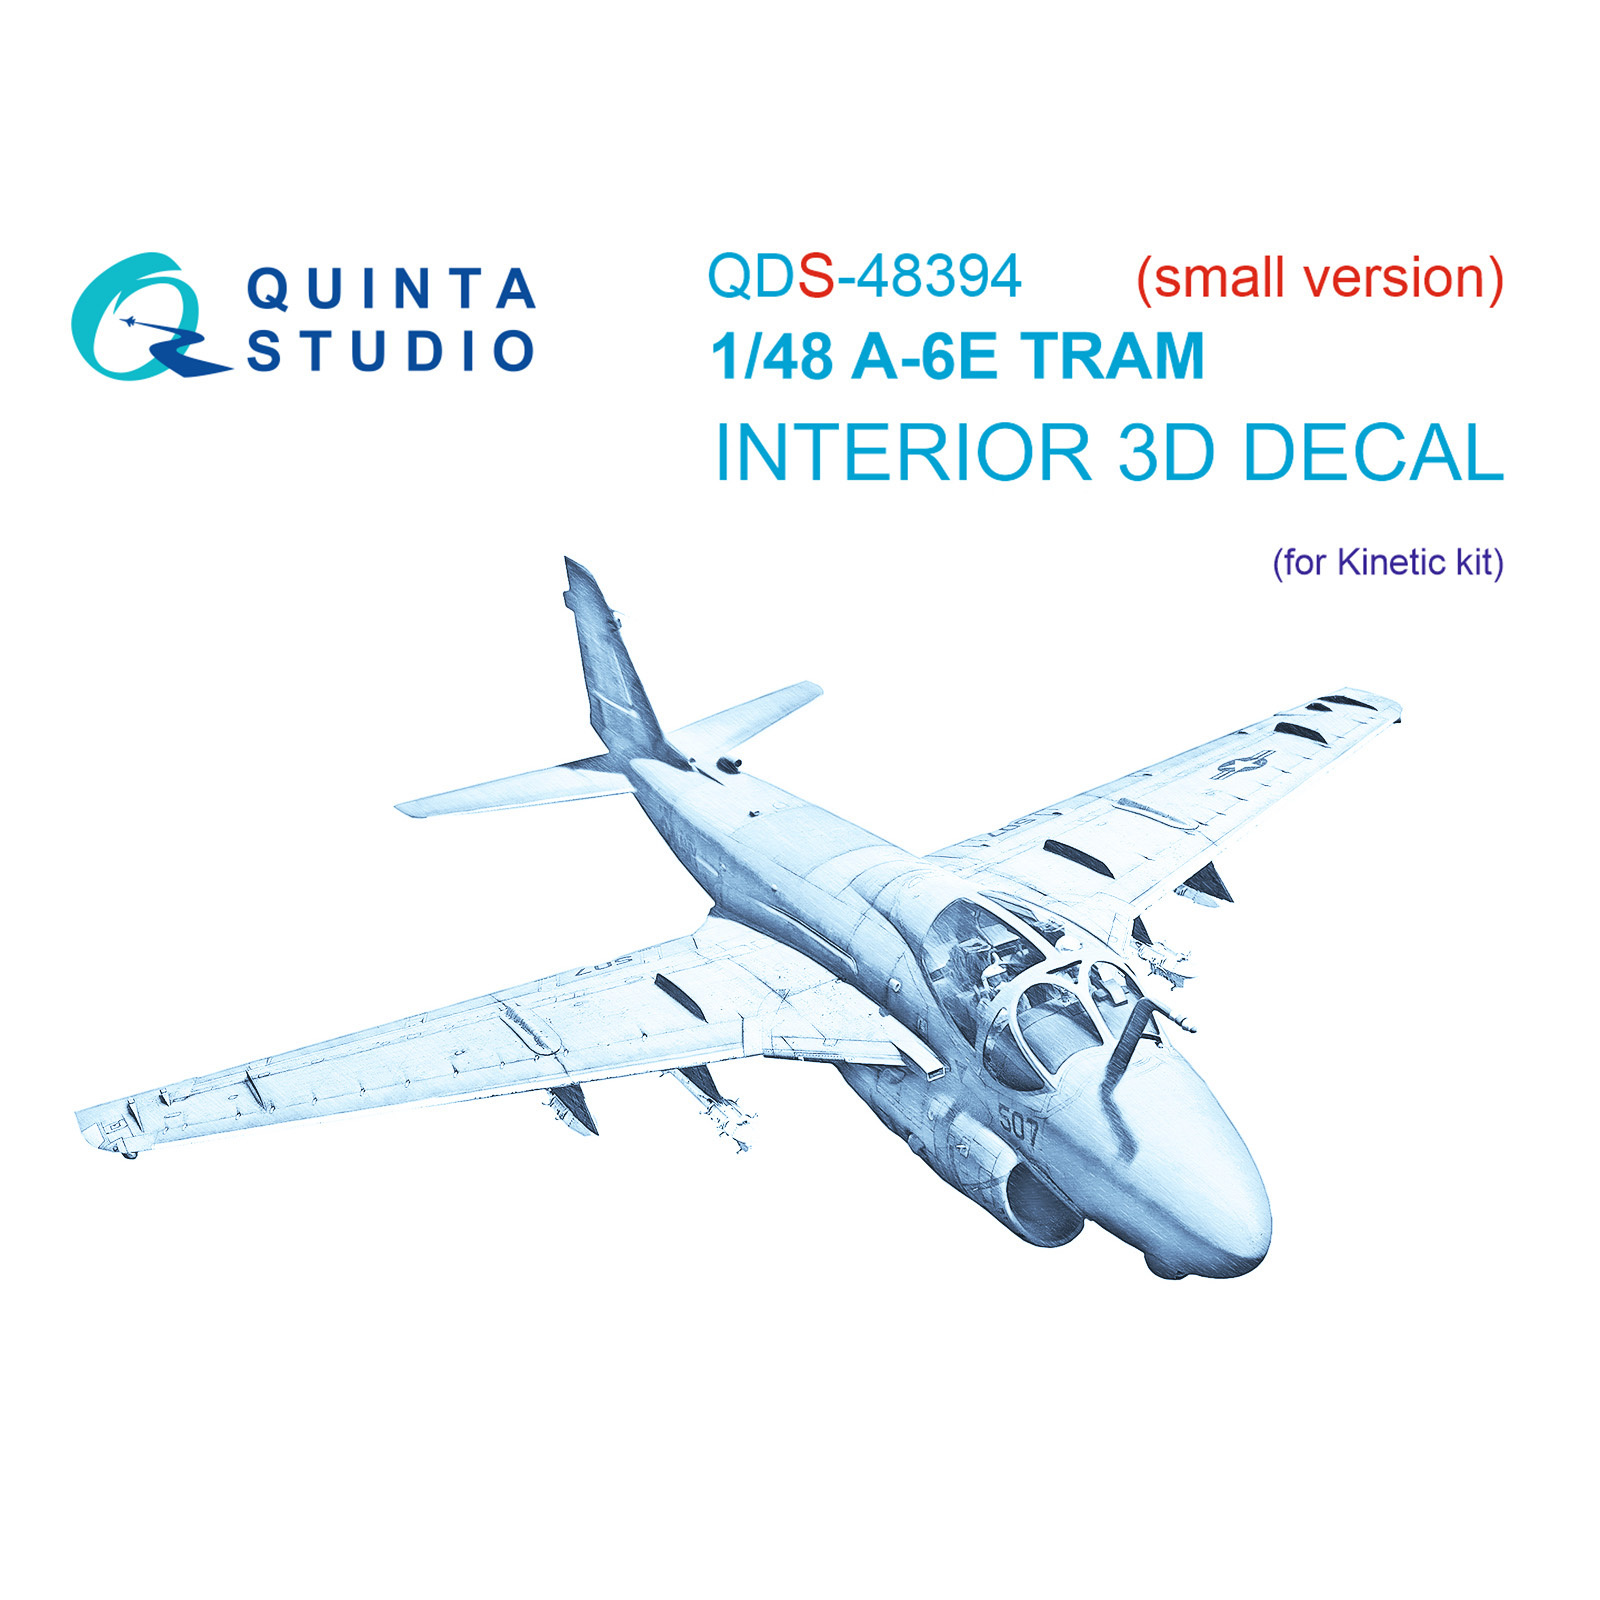 3D Декаль Quinta Studio интерьера кабины A-6E TRAM Малая версия QDS-48394